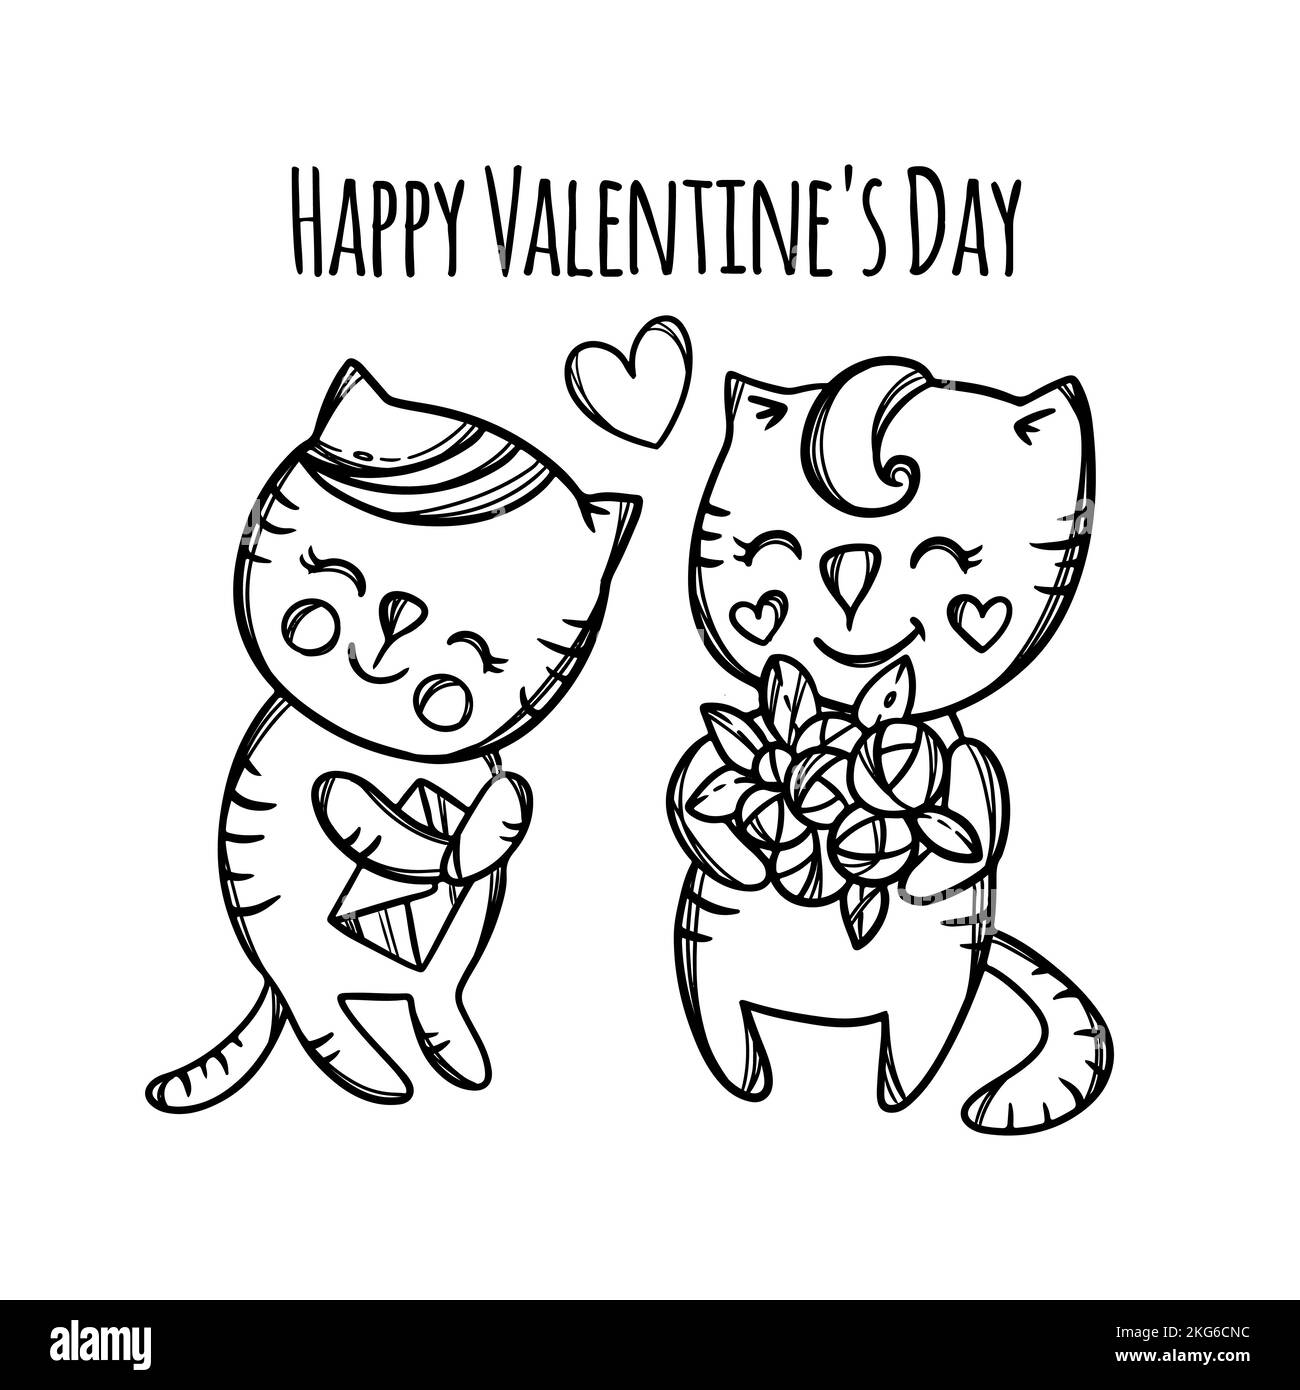 CAT DÀ FIORI al suo amato Kitty che è confuso giorno degli amanti San Valentino Cartoon animali monocromatico disegnato a mano clip Art Vector Illustration per Illustrazione Vettoriale